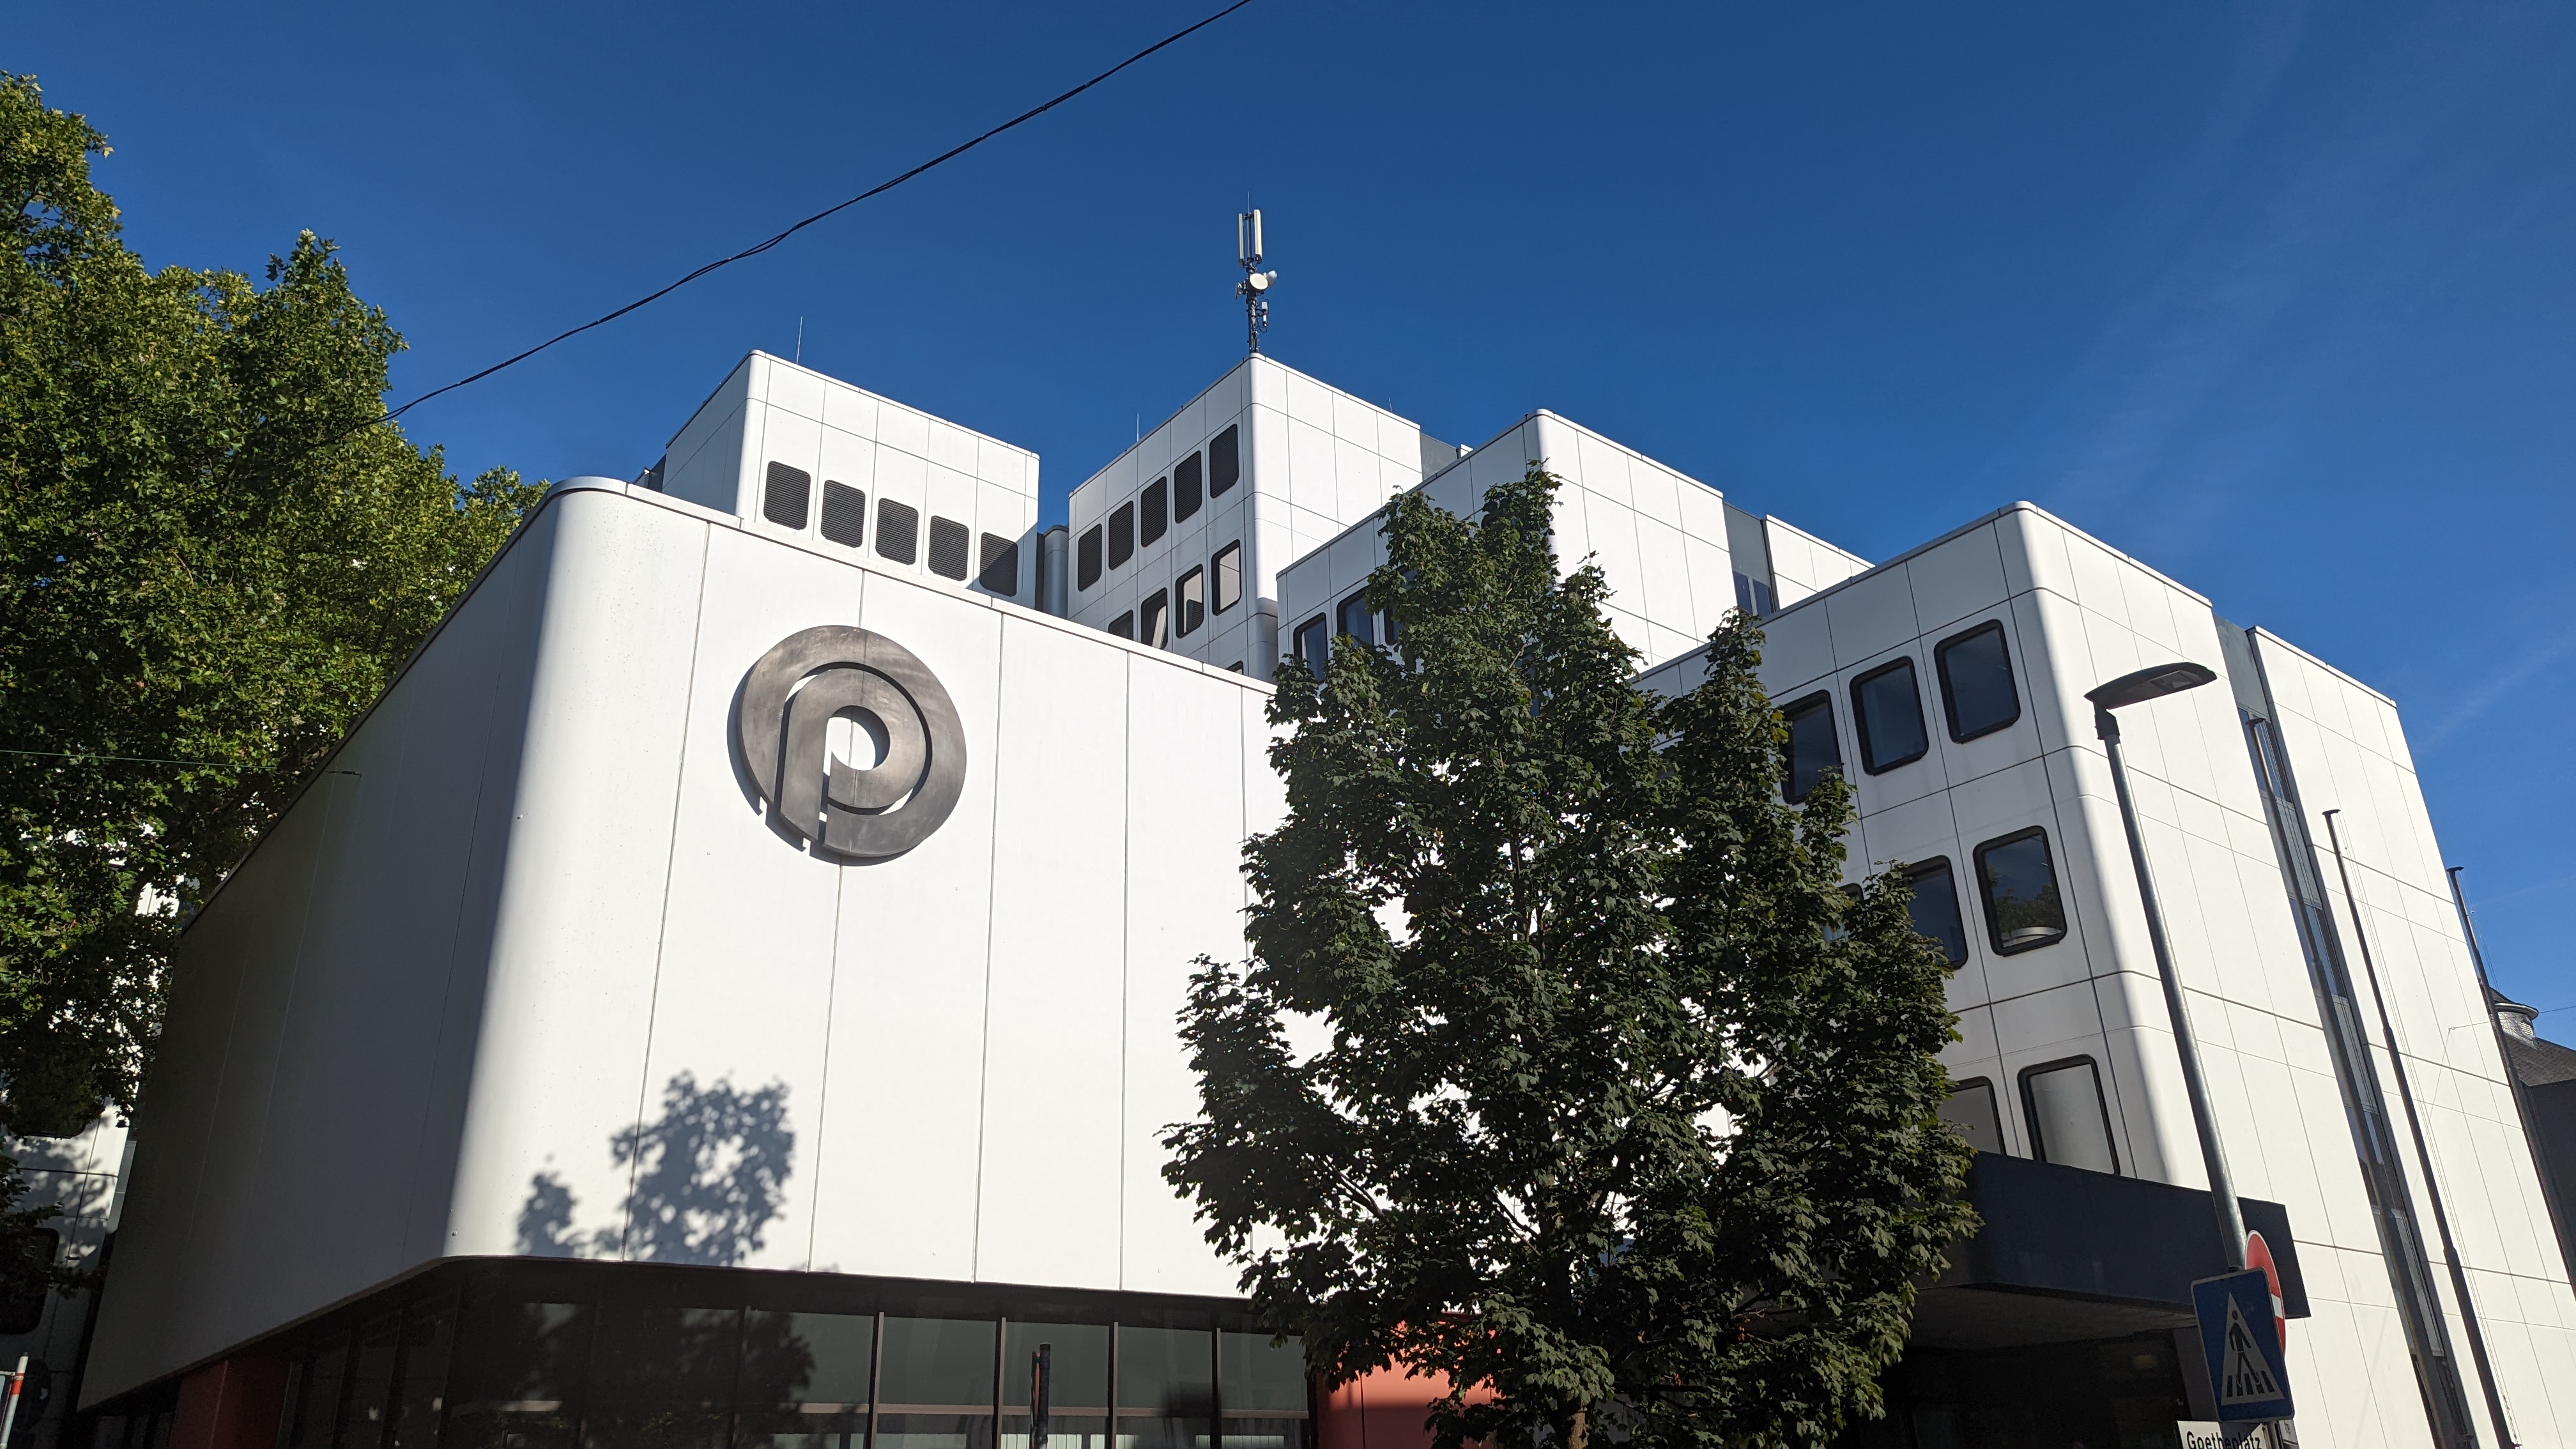 Verwaltungsgebäude Goetheplatz in Opladen im Sonnenschein. Gut zu sehen ist ein Logo, dass das Kürzel von Opladen enthält: OP